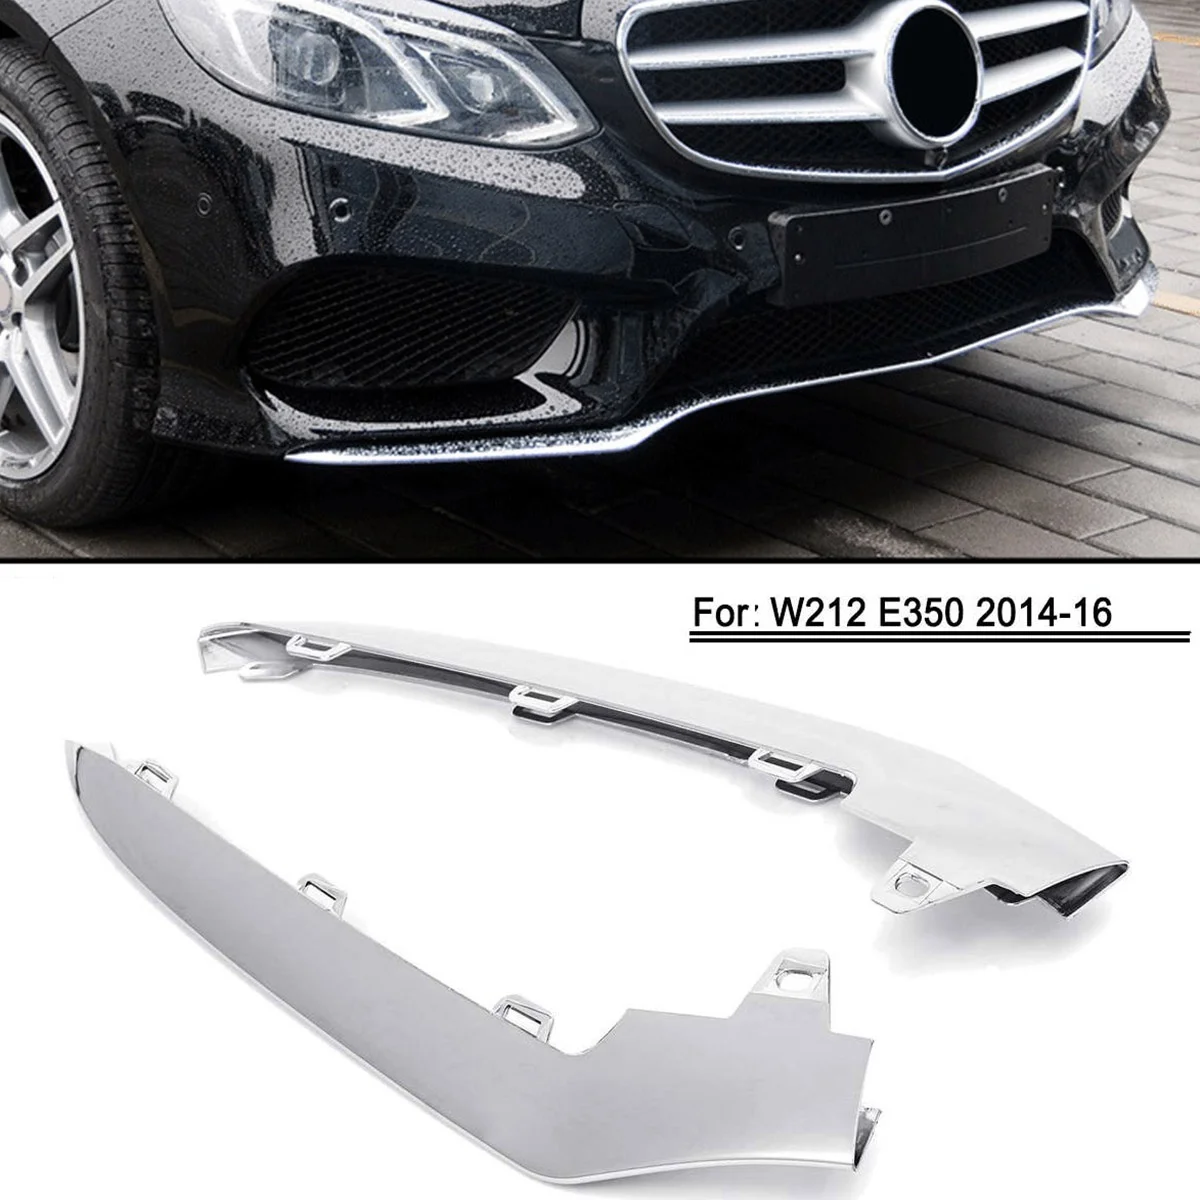 Ön Düşük Tampon Kapak Trim, Mercedes-Benz E-Class için W212 E350 2014-2016 ÖN TAMPON Splitter 2128852874 Sağ Yan